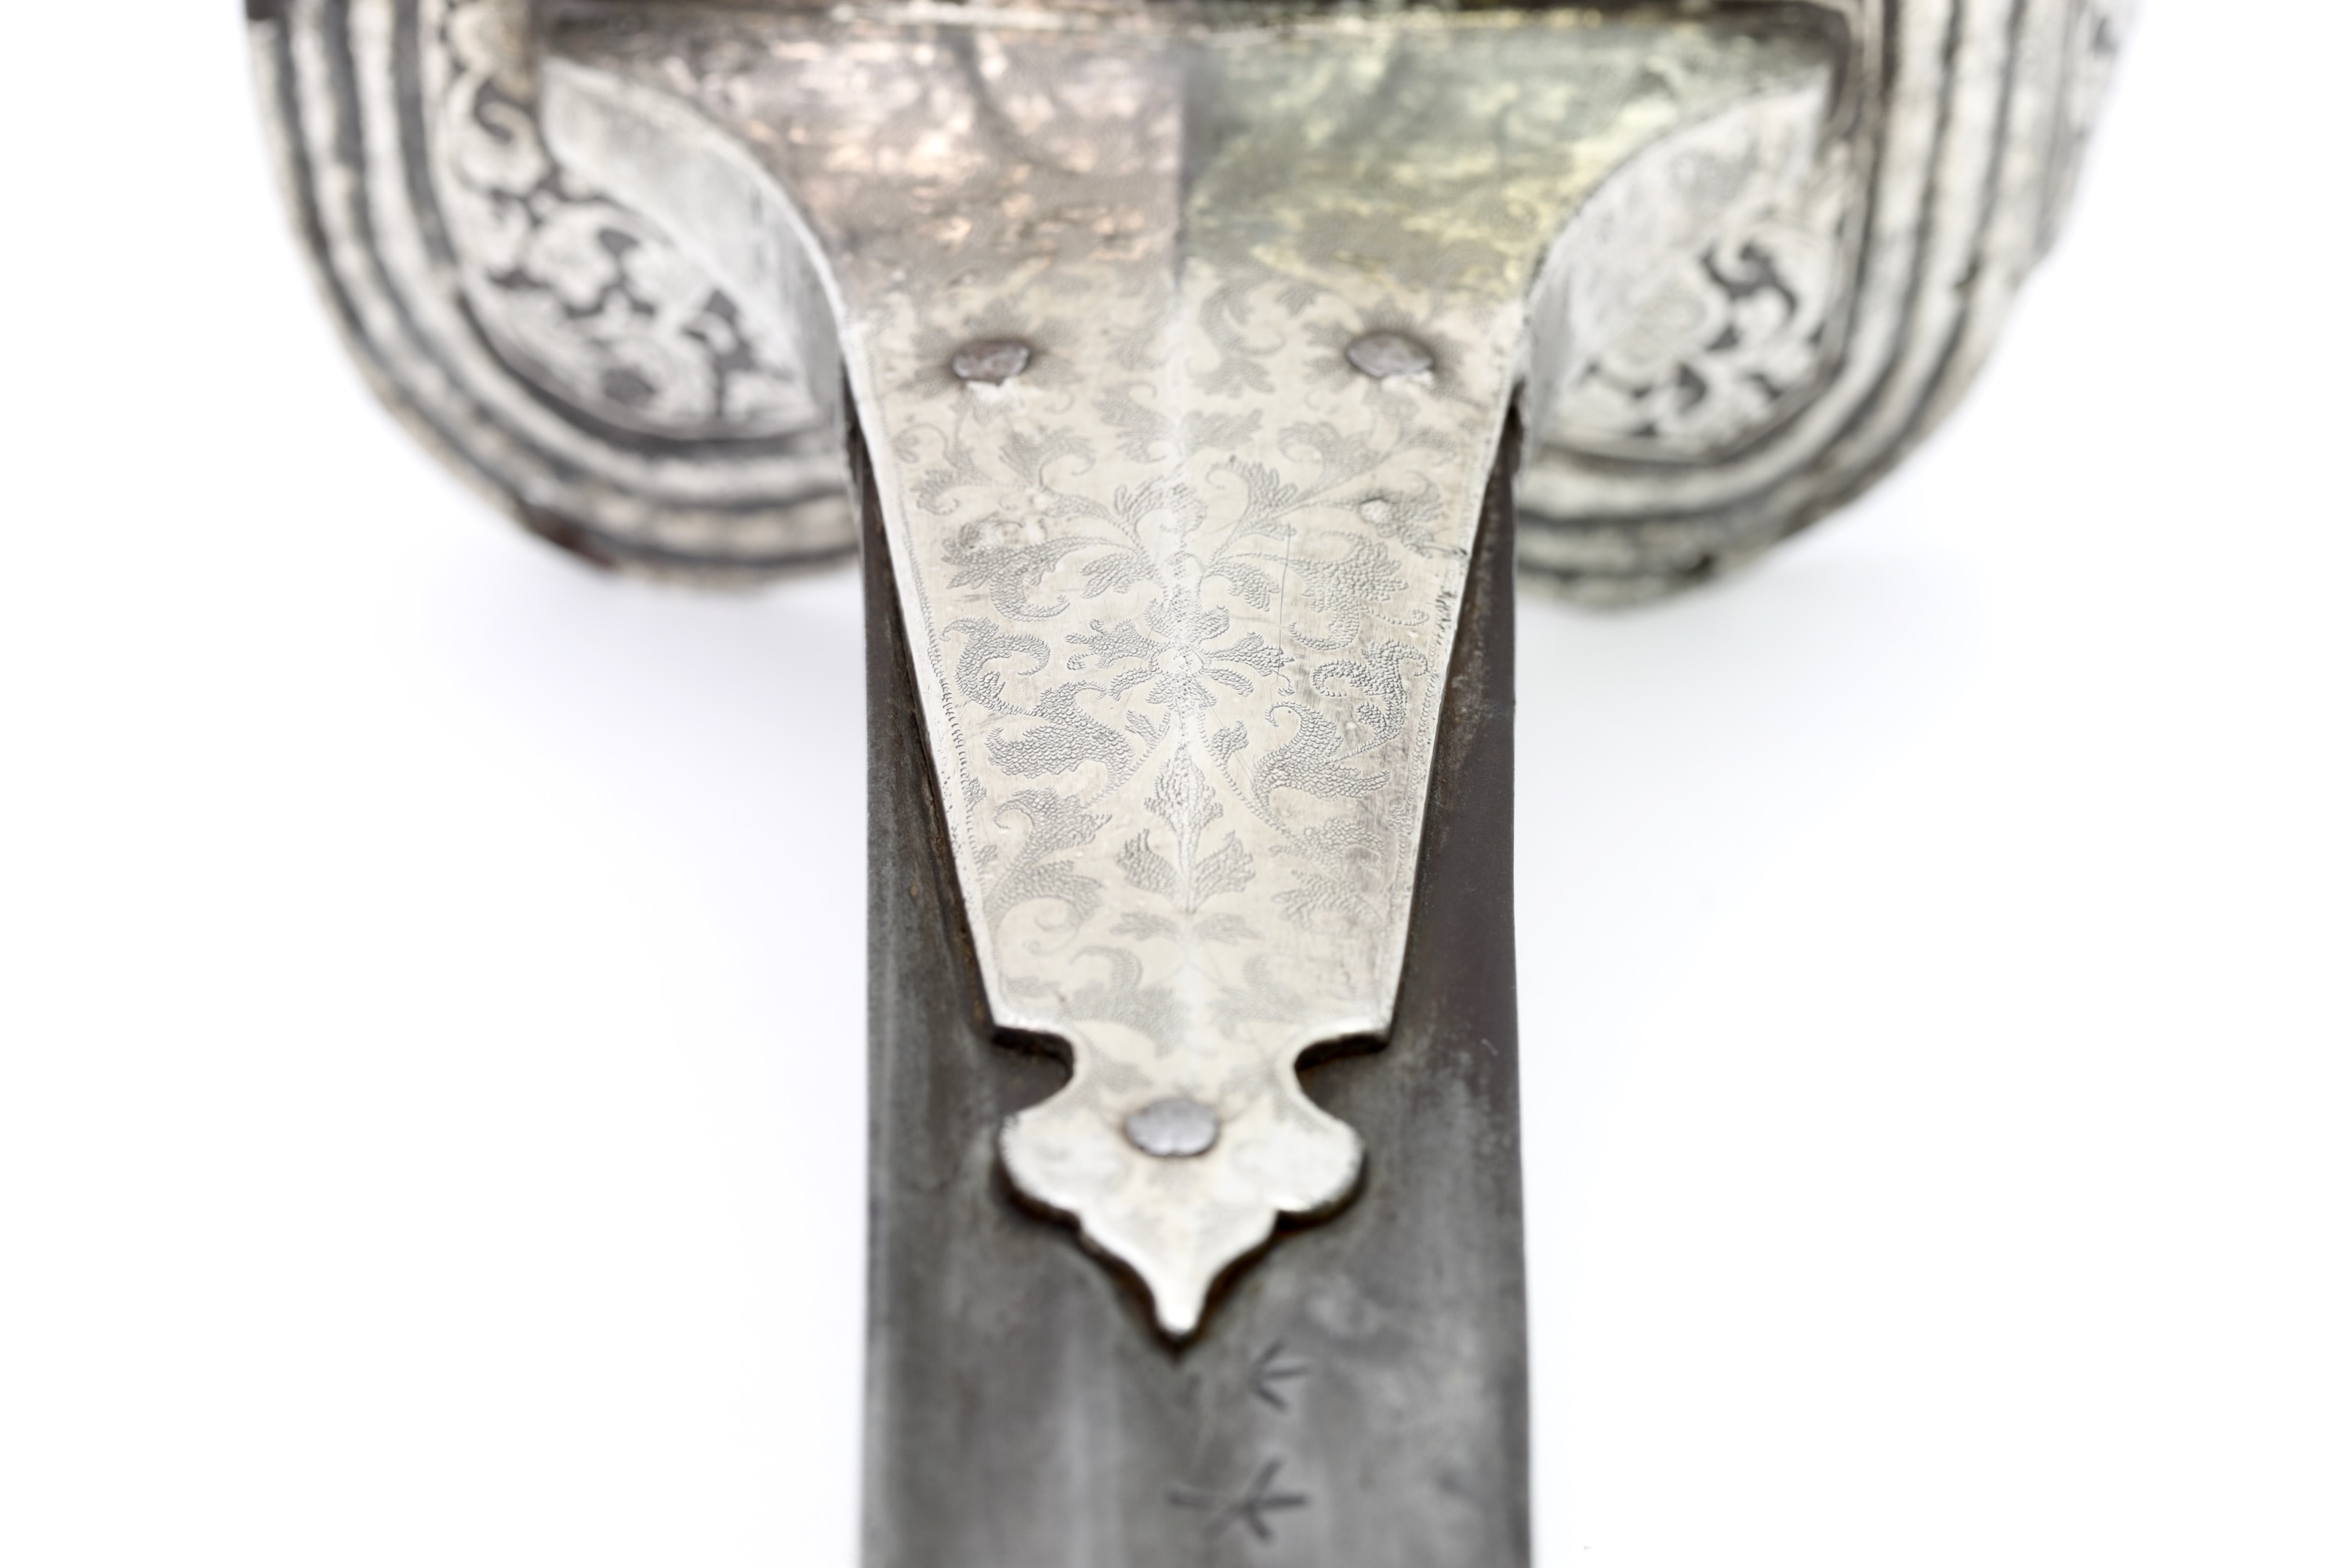 Deccan firangi with fine silver overlaid hilt